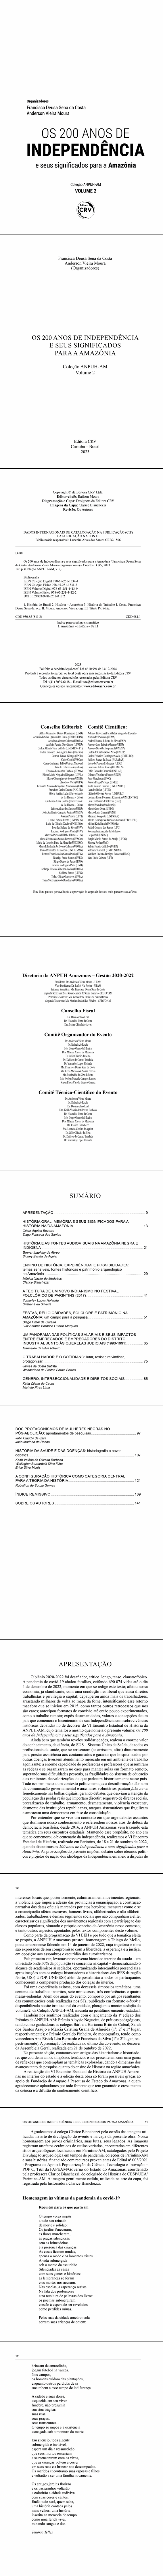 OS 200 ANOS DE INDEPENDÊNCIA E SEUS SIGNIFICADOS PARA A AMAZÔNIA <br>Coleção ANPUH-AM <br>Volume 2